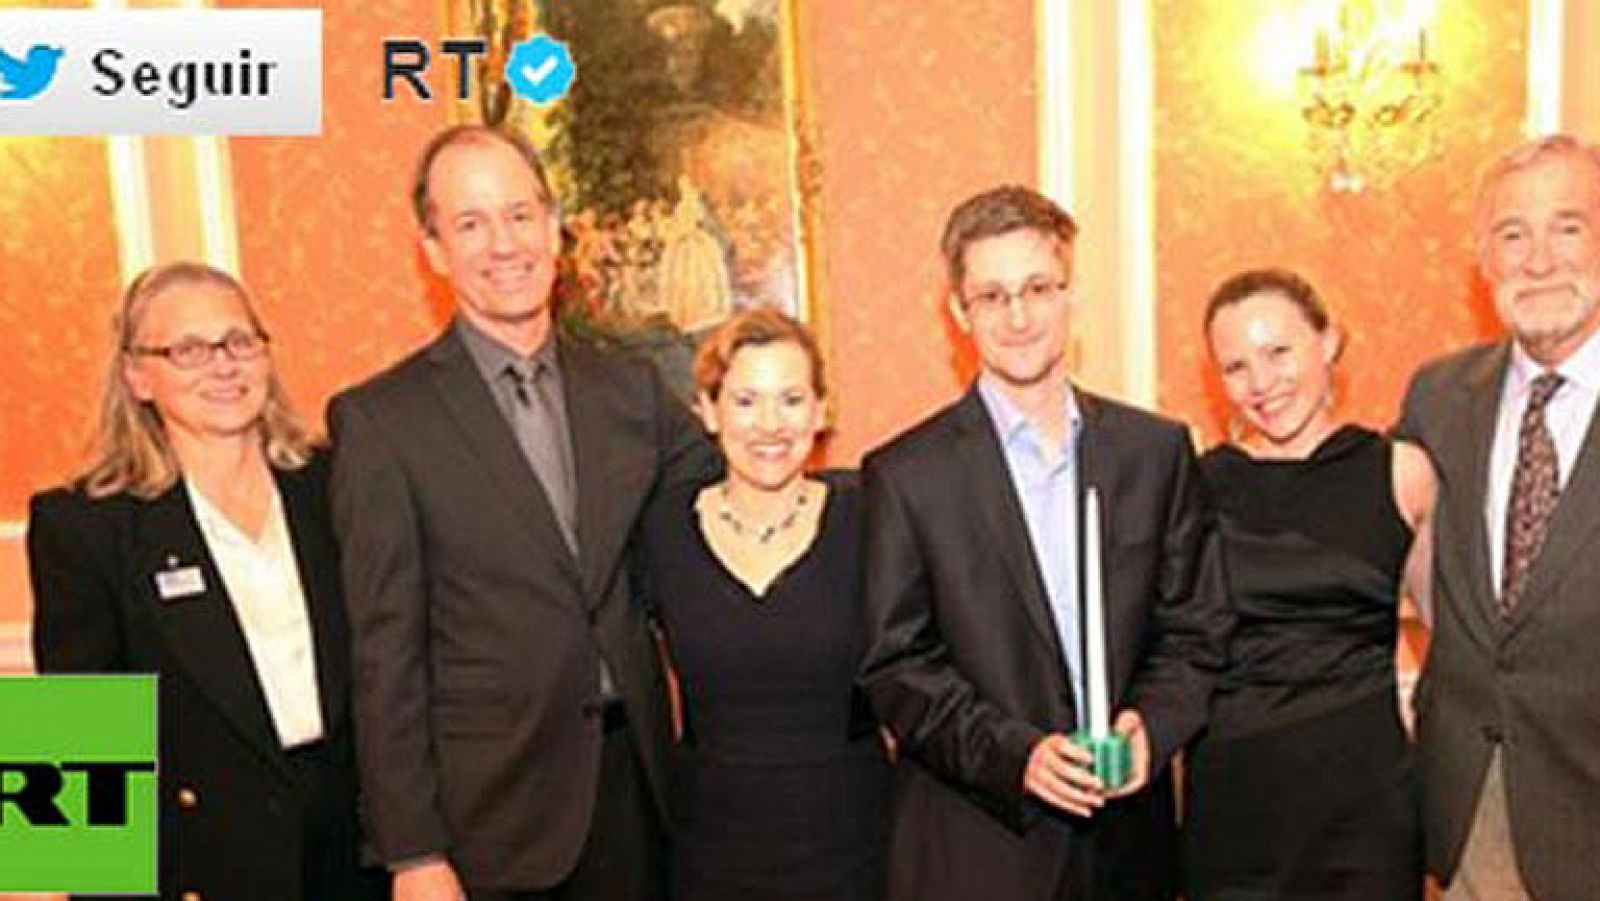  El portal Wikileaks ha publicado una fotografía de Edward Snowden, el extécnico de la CIA asilado en Moscú, acompañado de otros filtradores estadounidense de datos. Se trata de la primera foto de Snowden desde que salió del aeropuerto de Moscú. En ella le acompañan cuatro supuestos exinformantes de las actividades ilegales de la CIA, el NSA, el Ministerio de Justicia y el FBI estadounidenses.